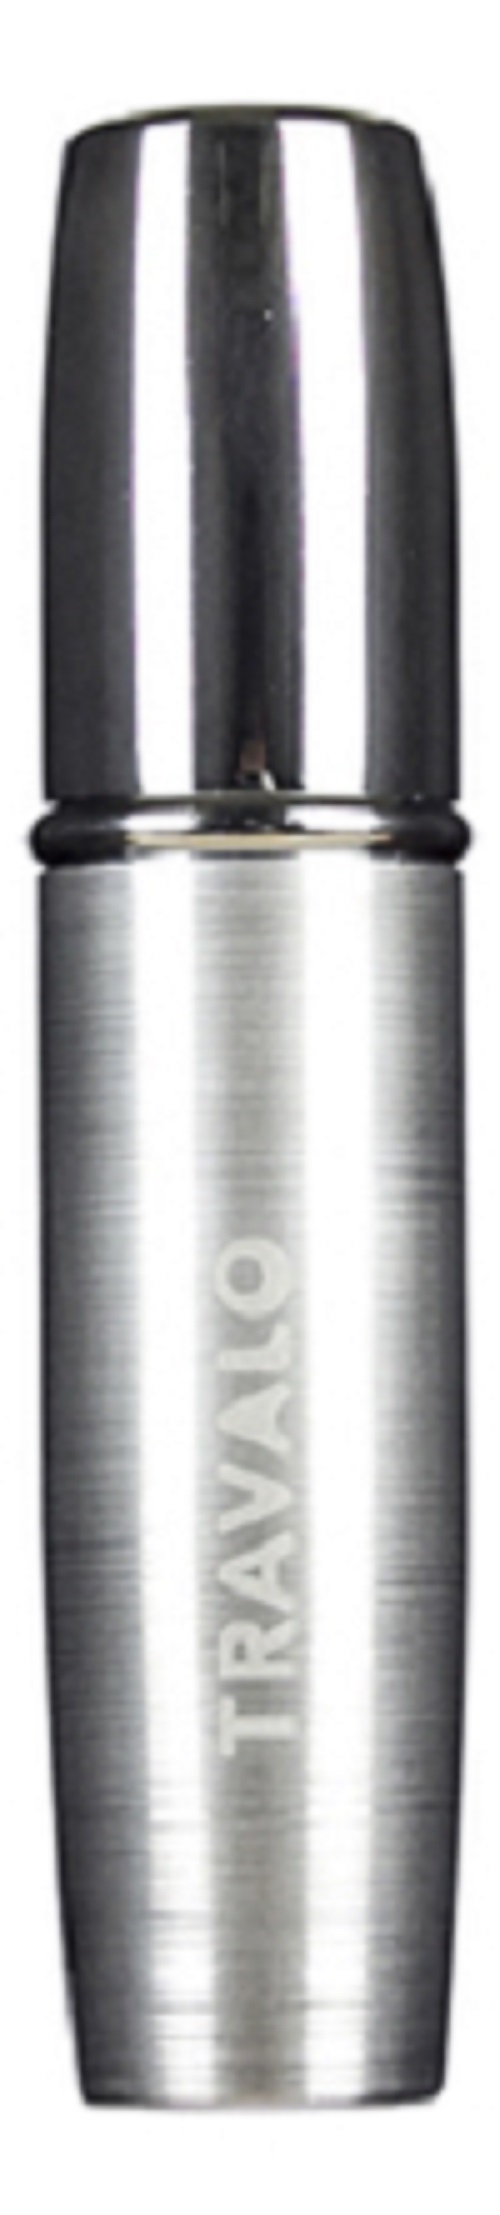 Атомайзер Travalo Lux Perfume Spray 5мл Silver набор travalo classic refillable perfume spray сменная капсула 3х5мл футляр